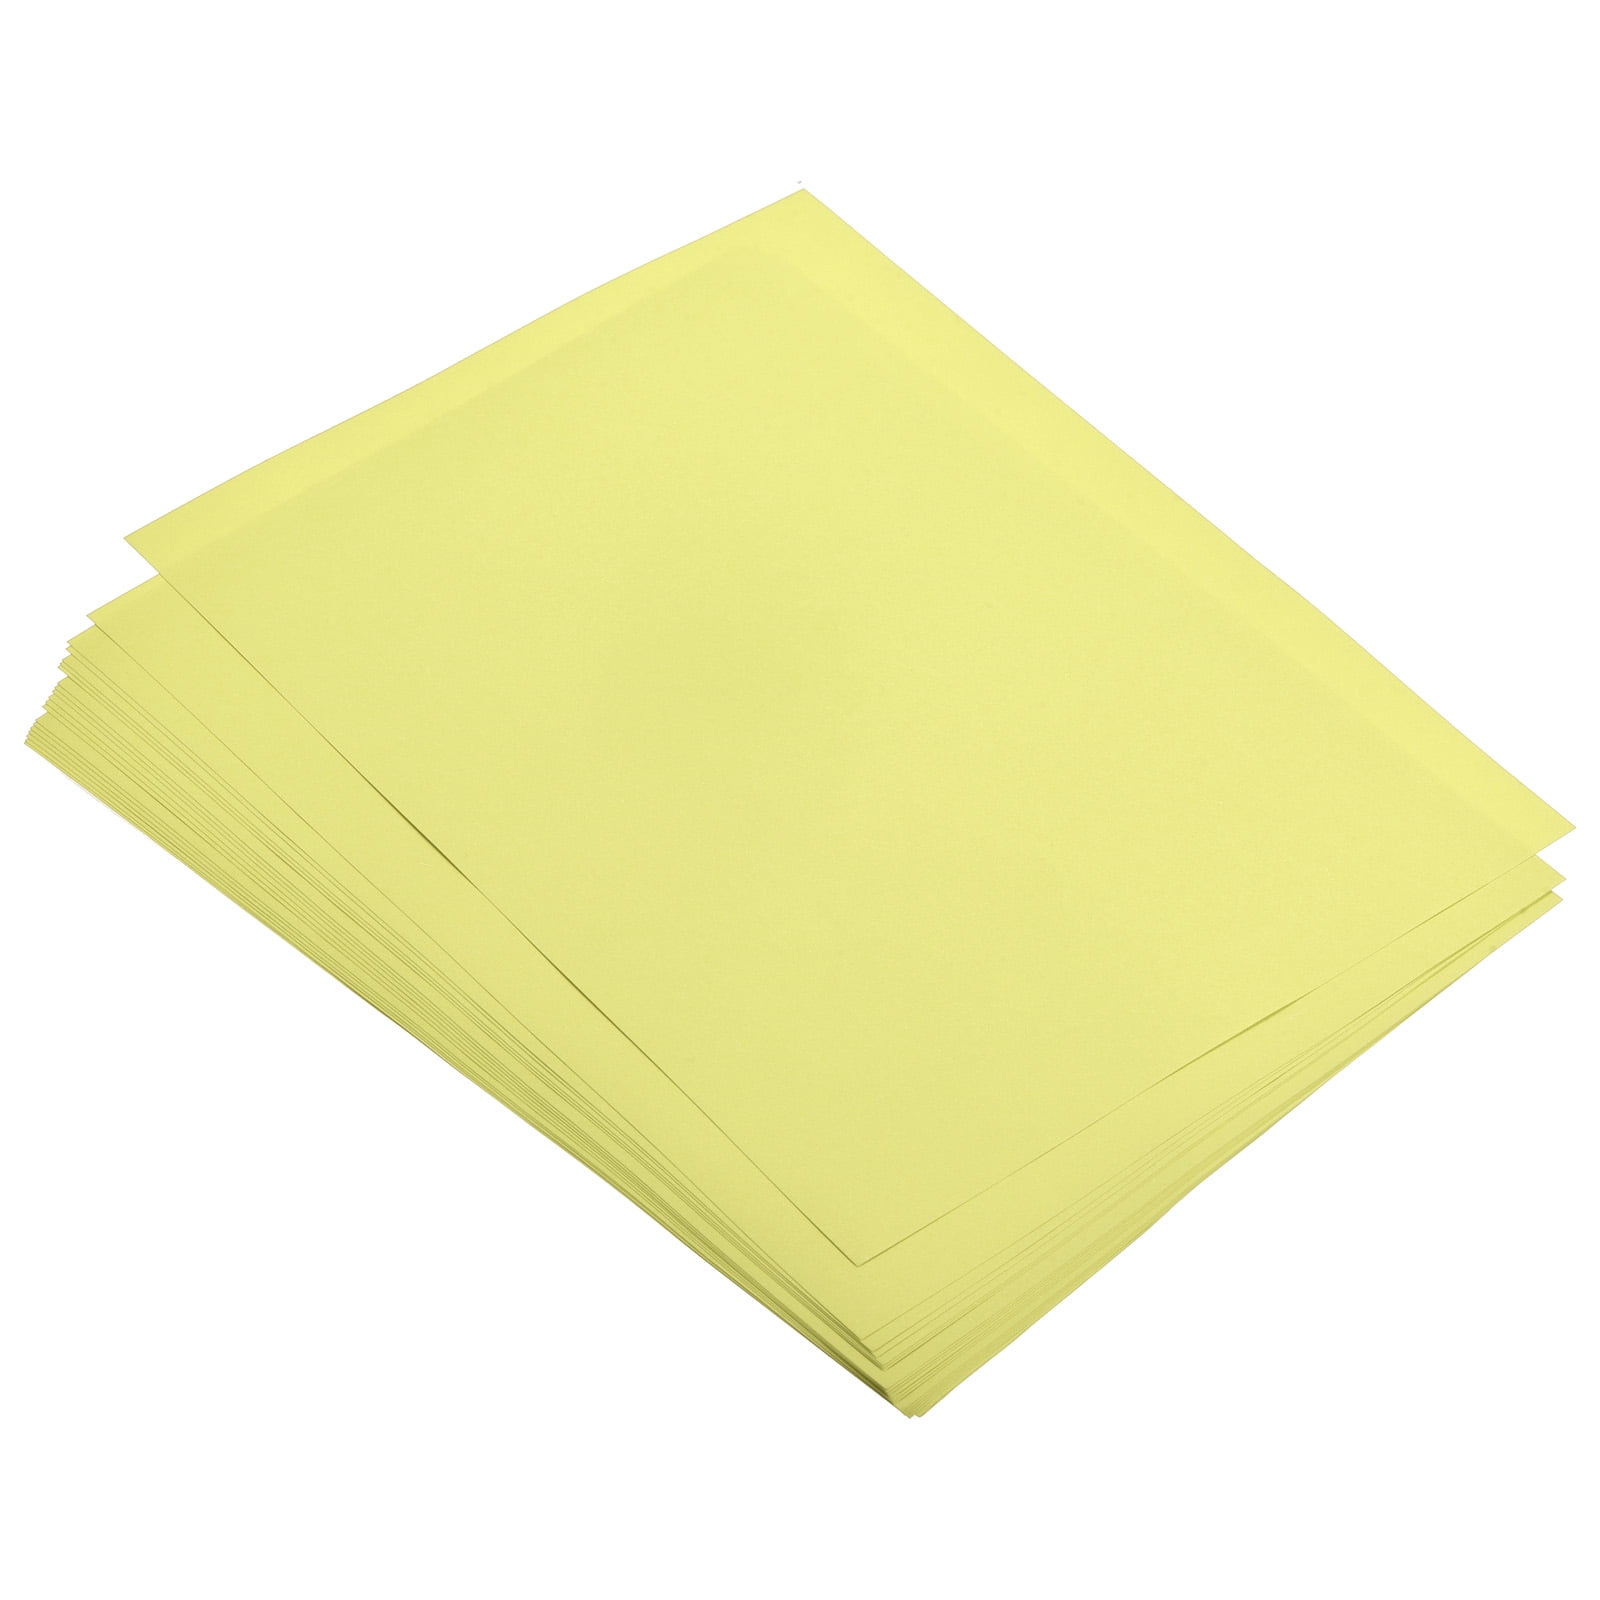  COLOR MAKE - Luz de papel de sublimación, 8.3 x 11.7